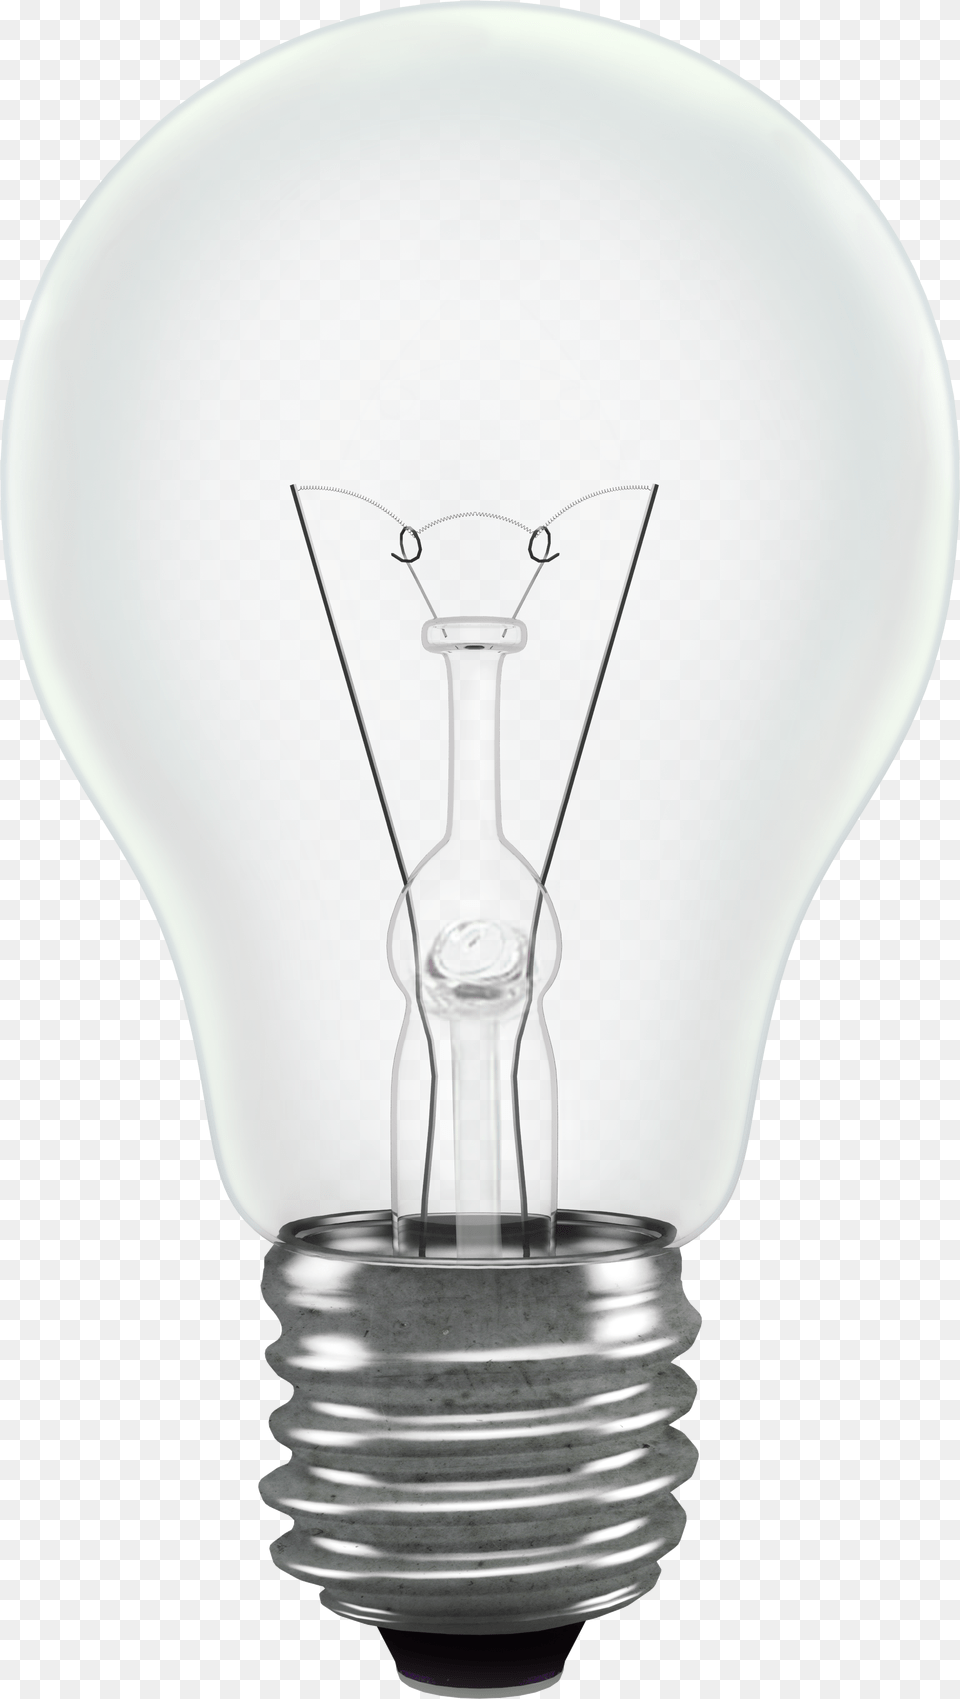 Light Filament Bulb Standard Shape Background Light Bulb Background, Lightbulb, Chandelier, Lamp Free Transparent Png